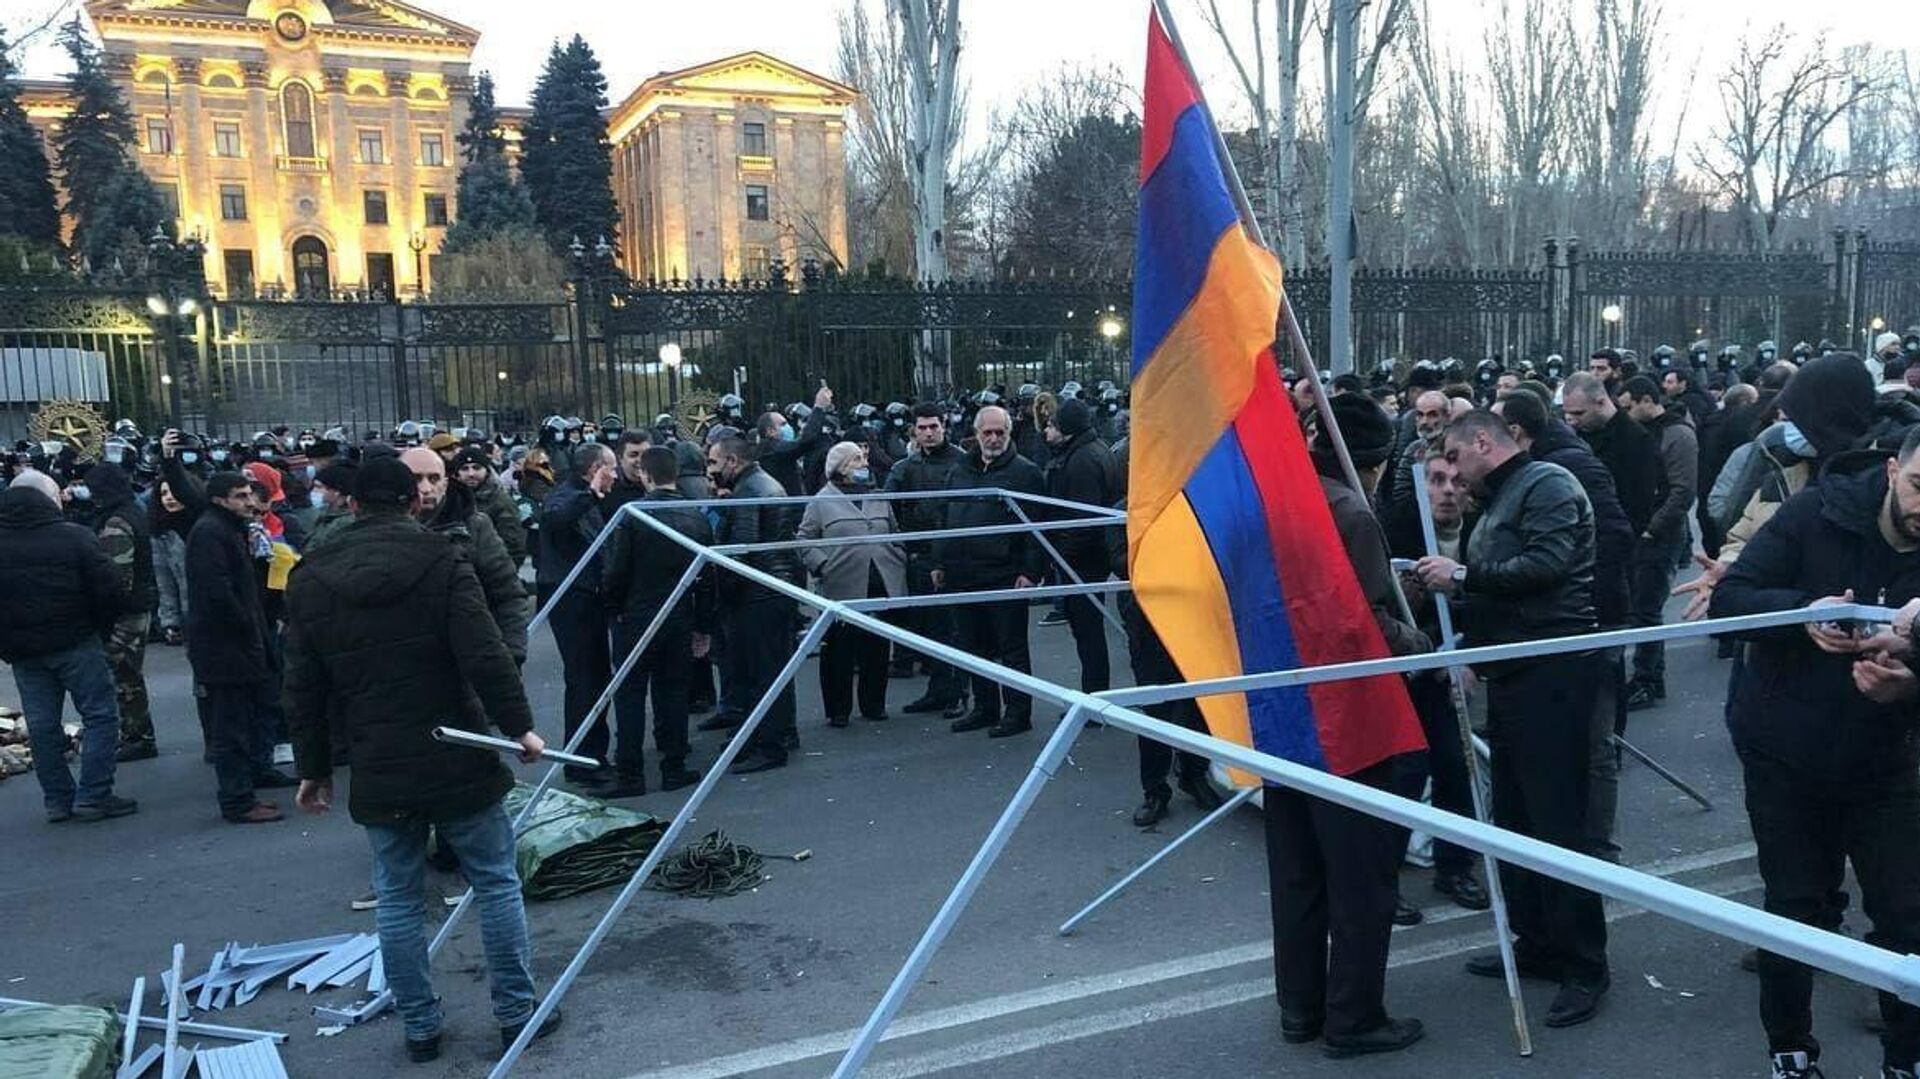 Оппозиция устанавливает палатки на проспекте Баграмяна у здания Национального собрания Армении  - РИА Новости, 1920, 27.02.2021